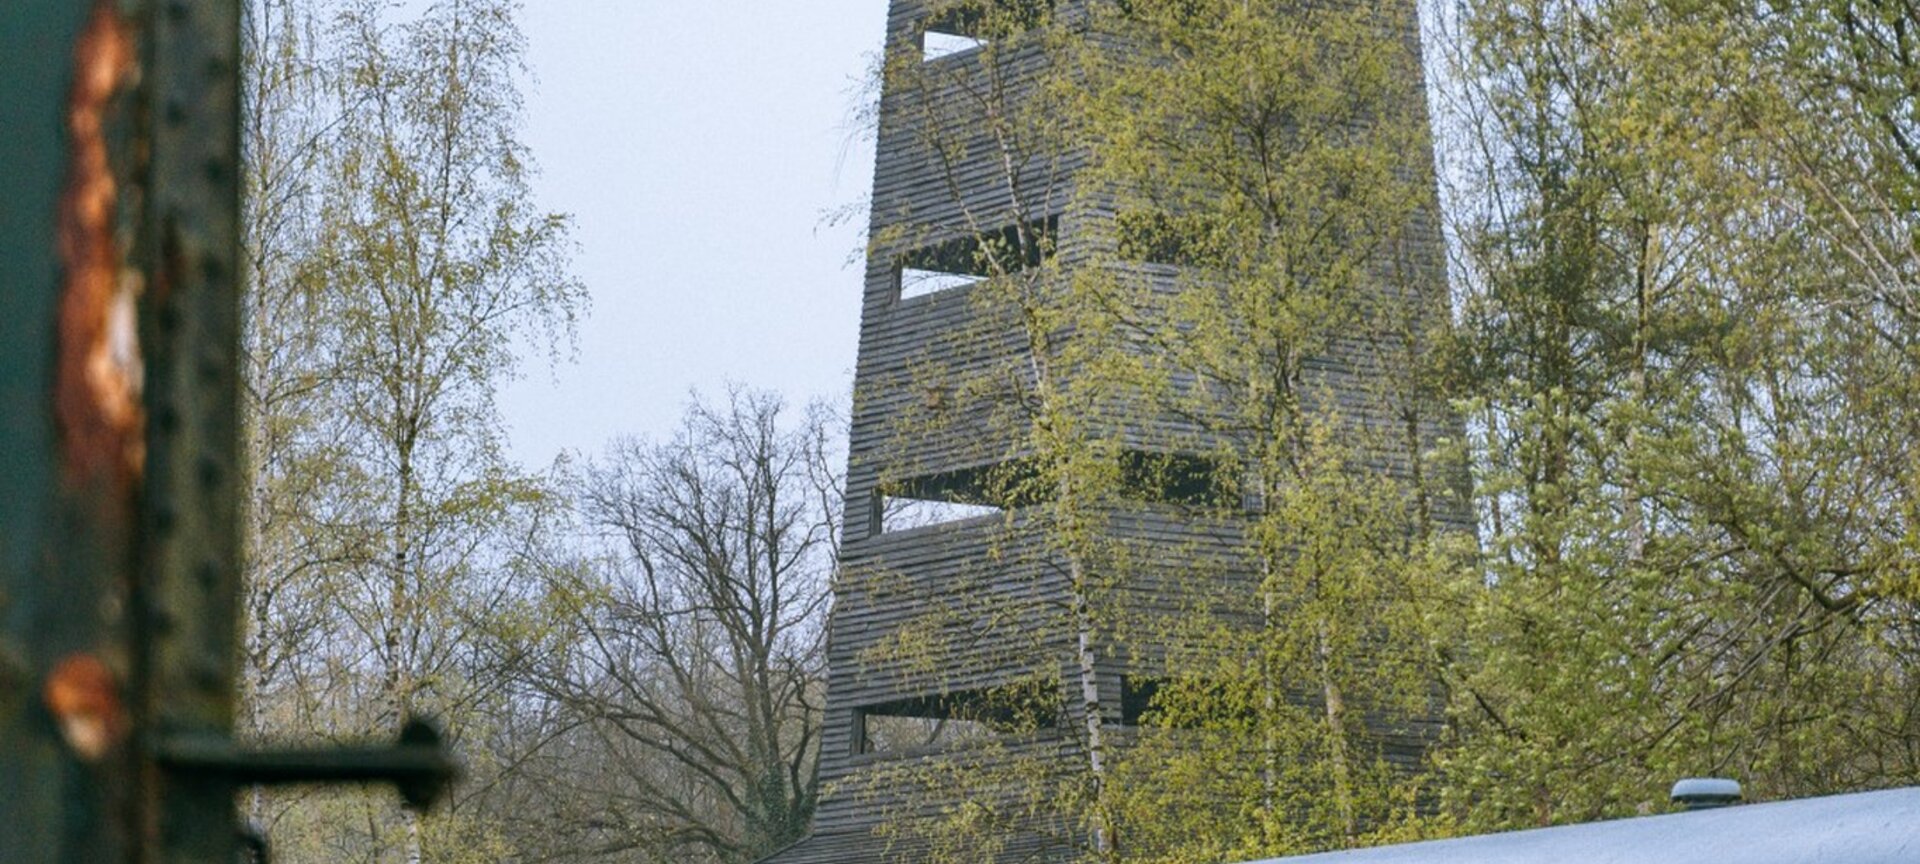 Uitkijktoren - Uitkijktoren